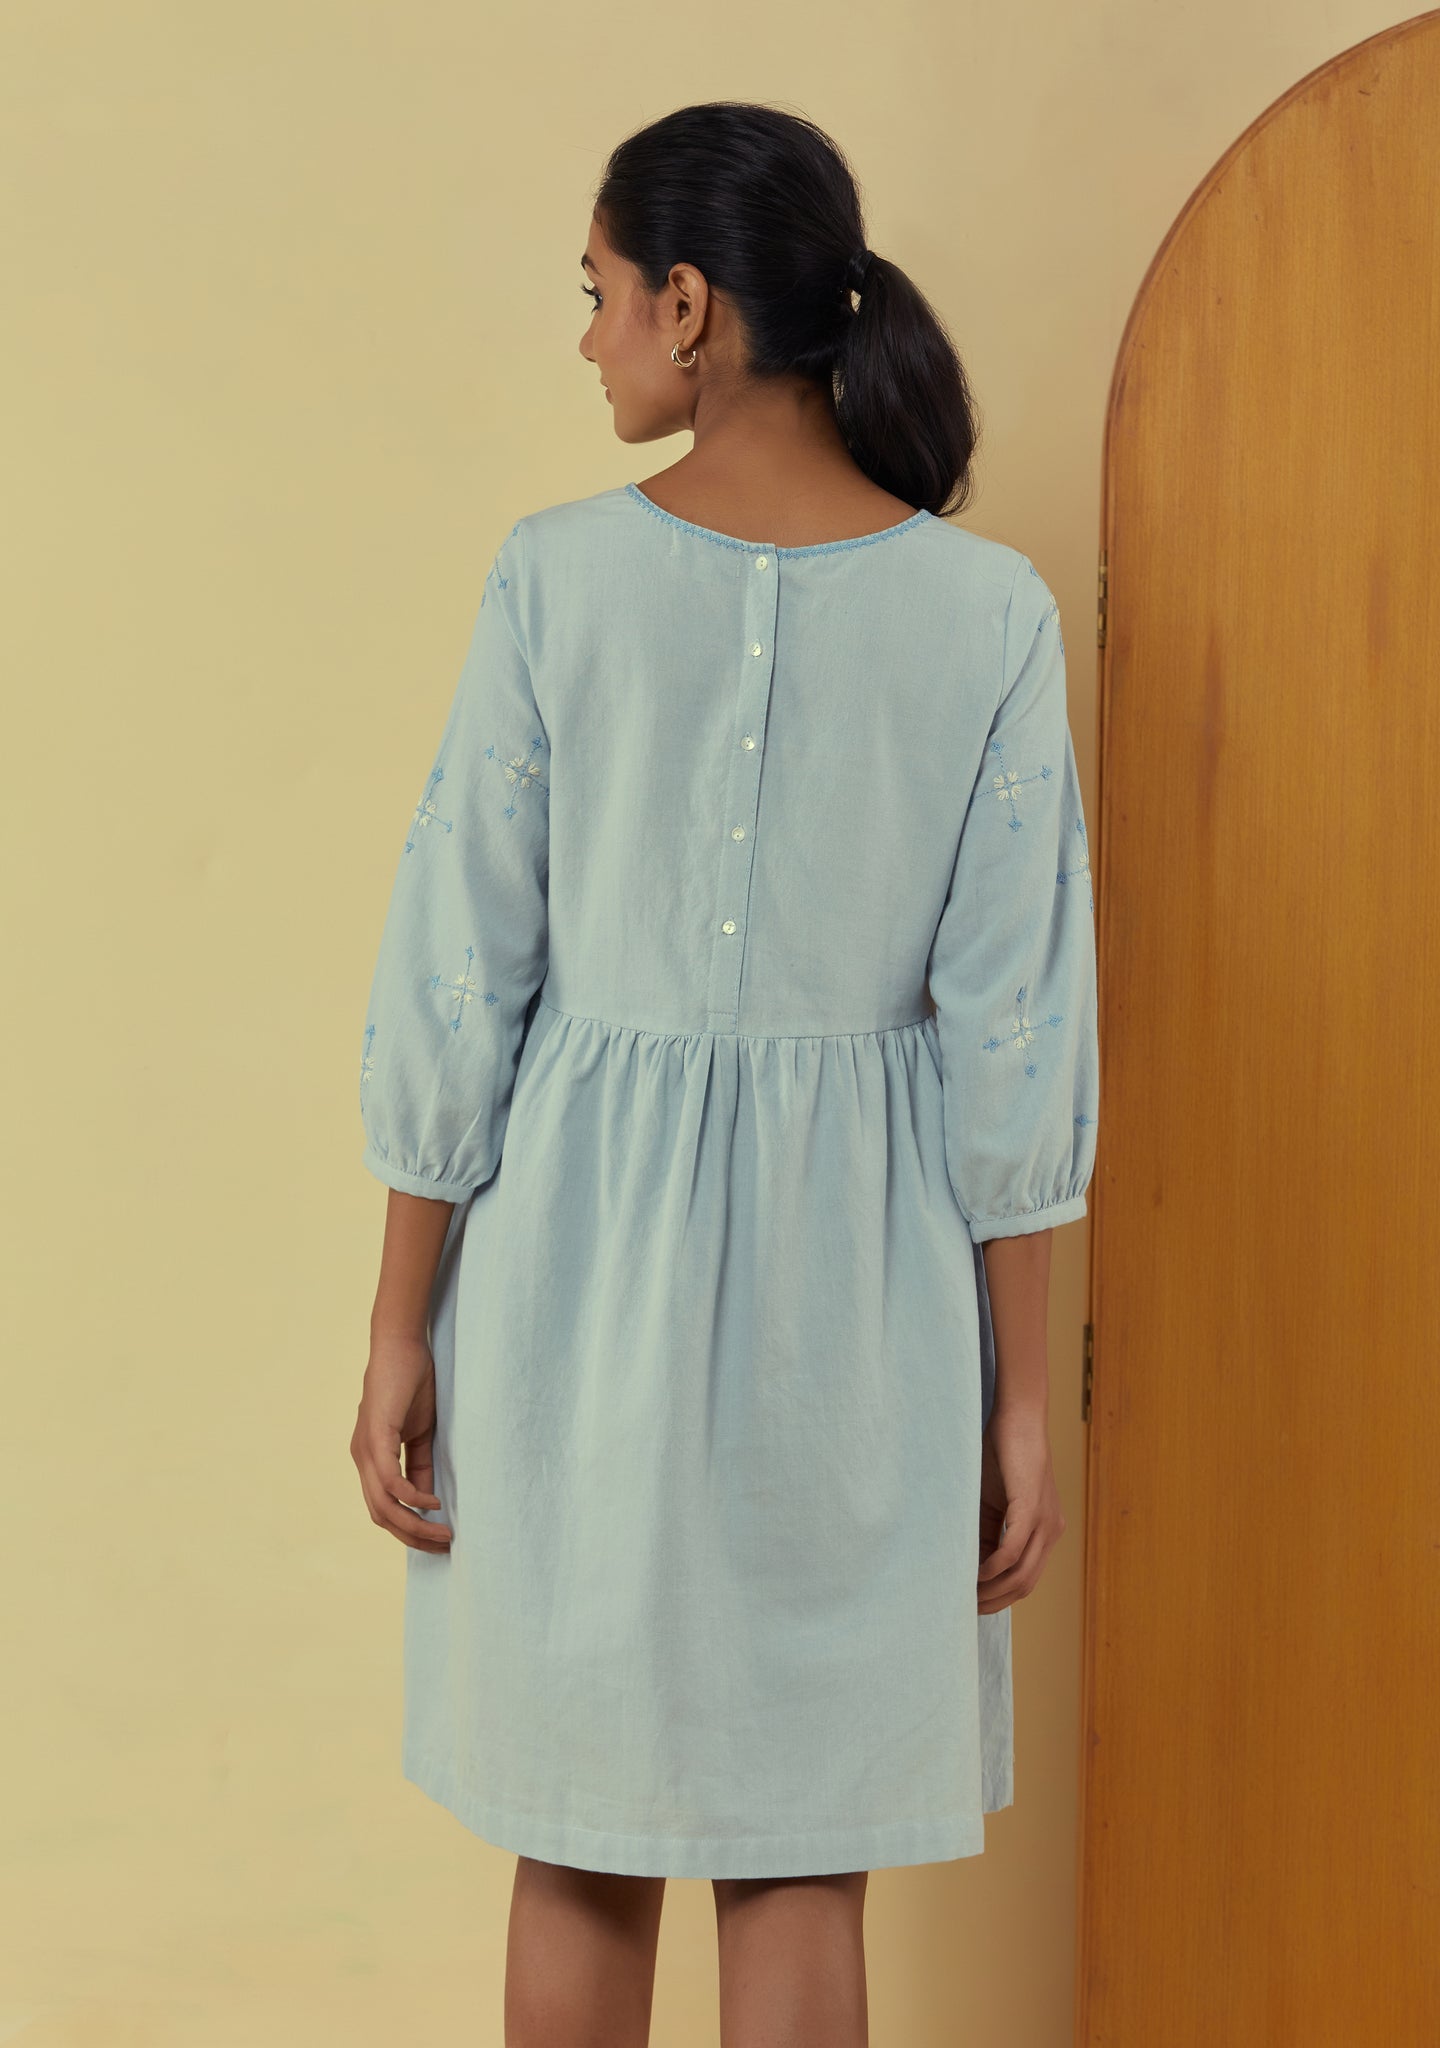 Liana Powder Blue Knee Length Dress With Hand Embroidery